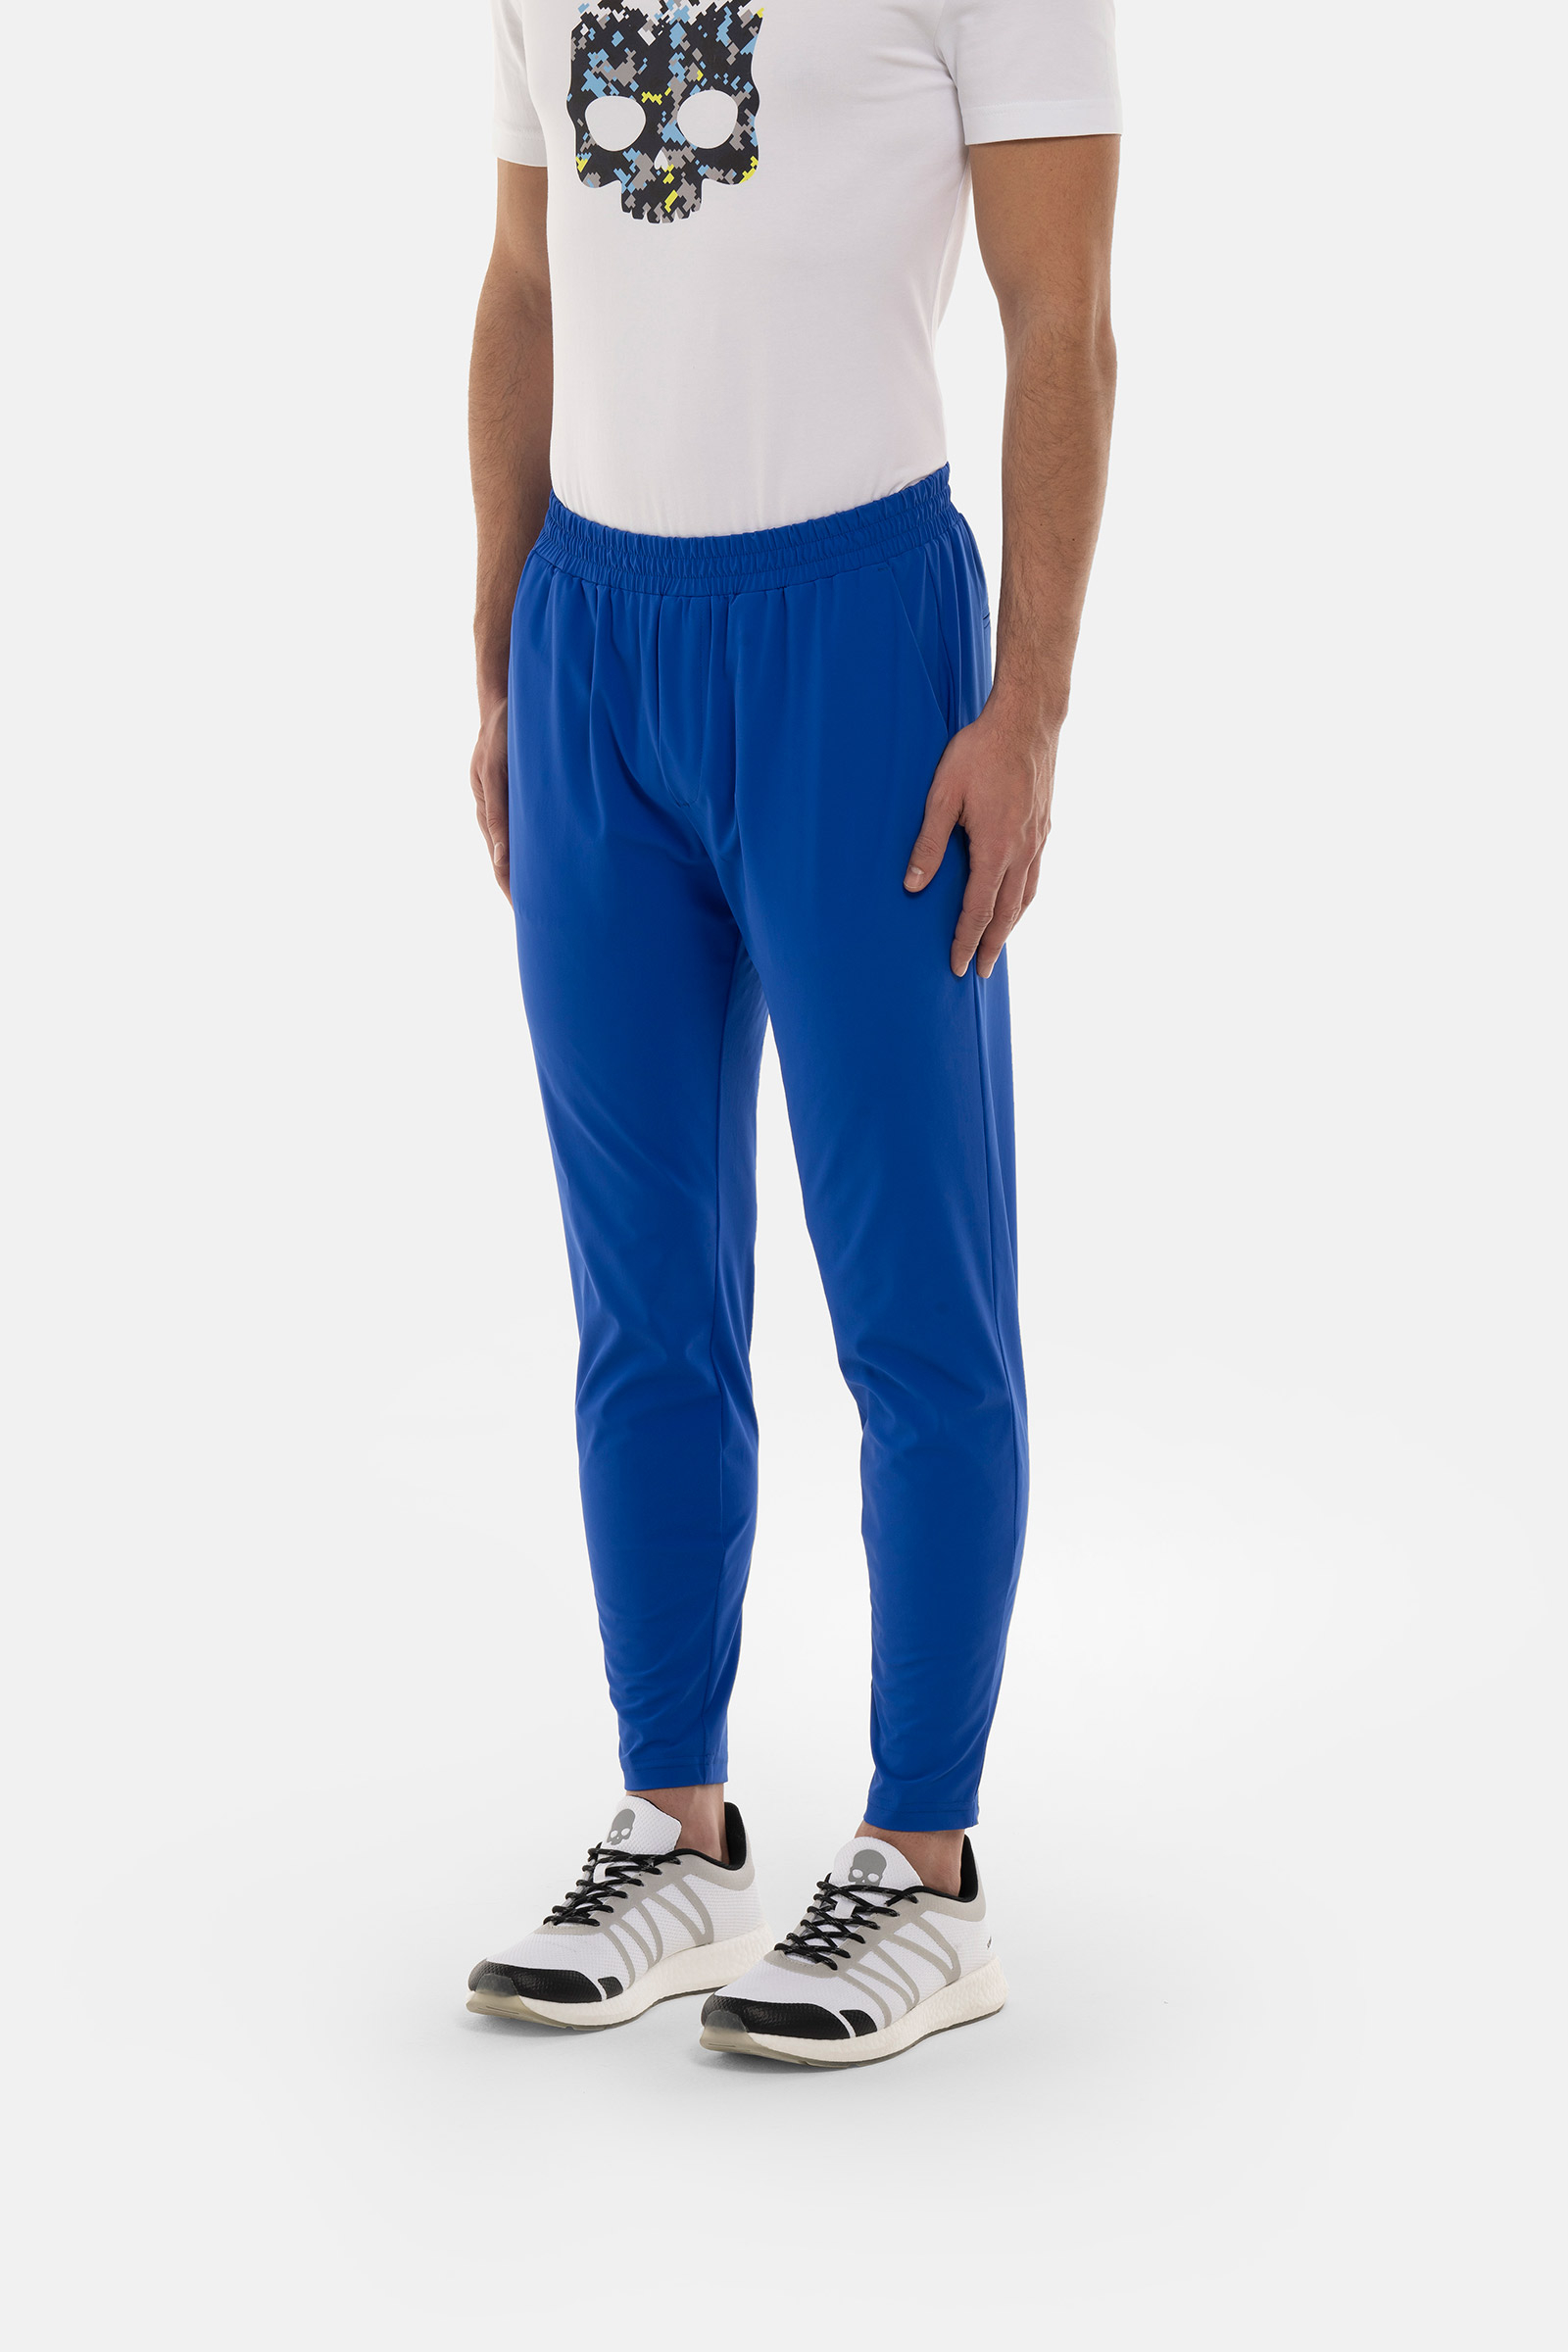 PANTALONI CLASSICI - BLUE - Abbigliamento sportivo | Hydrogen